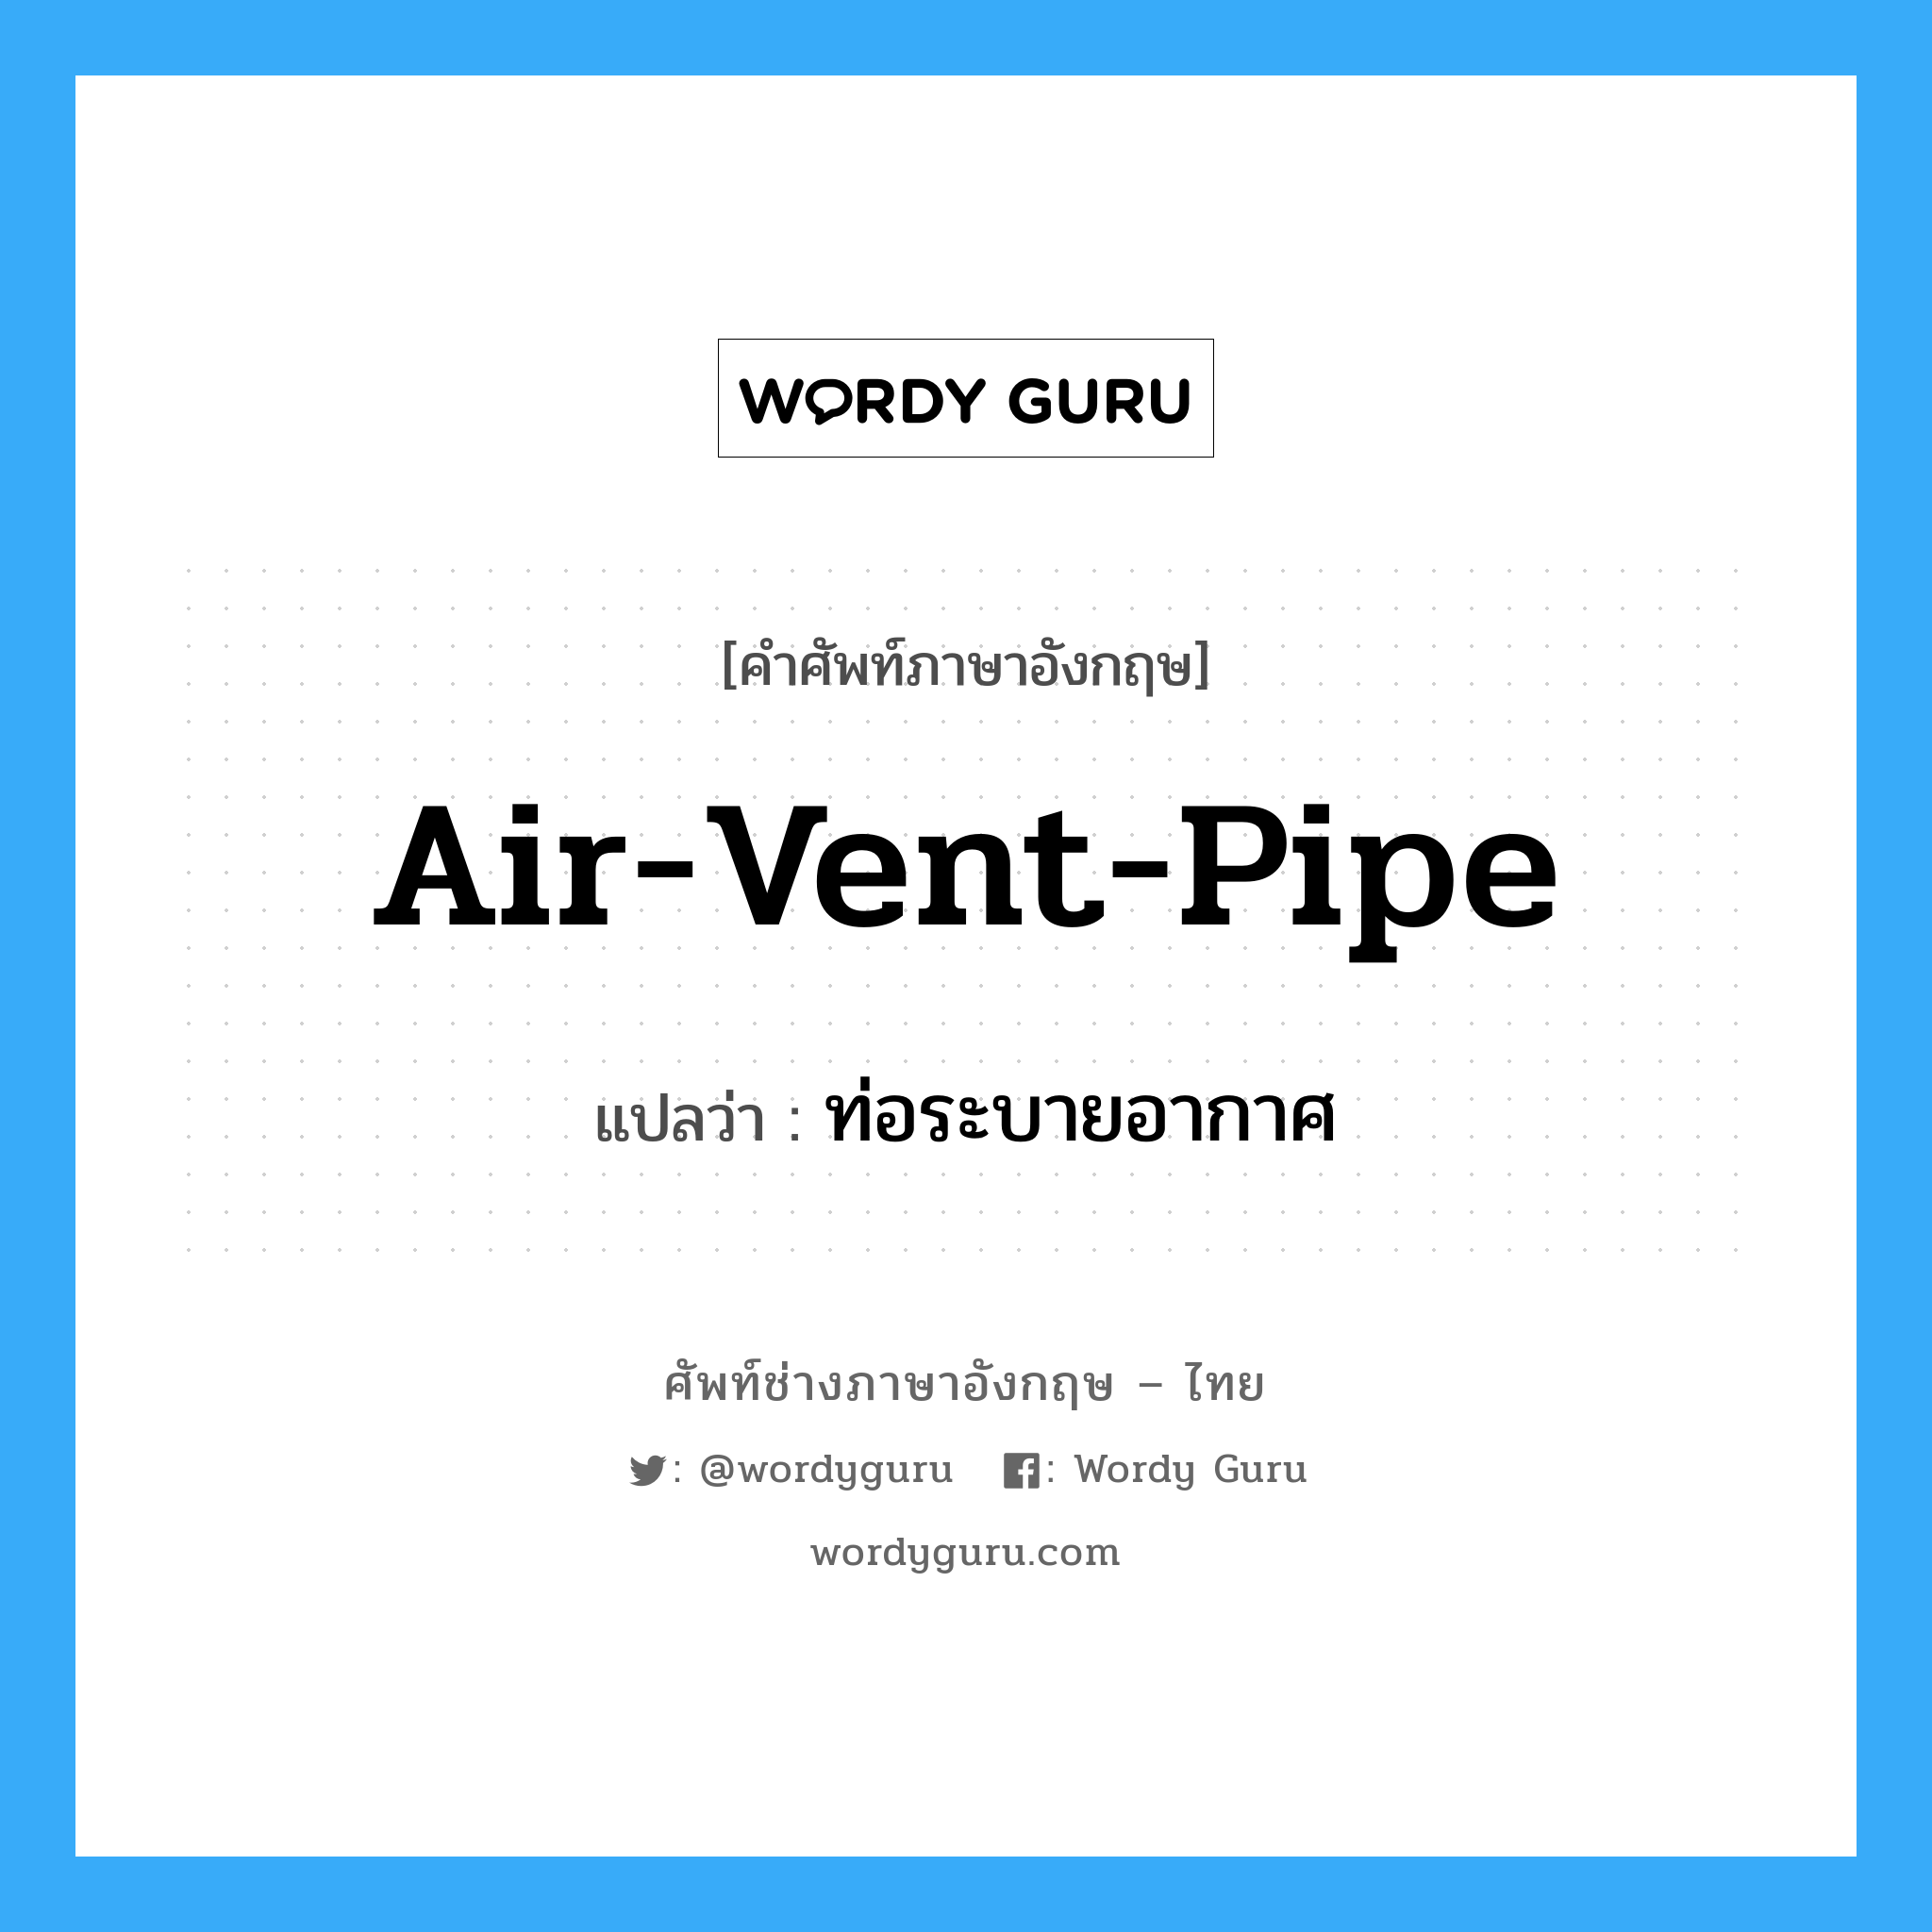 ท่อระบายอากาศ ภาษาอังกฤษ?, คำศัพท์ช่างภาษาอังกฤษ - ไทย ท่อระบายอากาศ คำศัพท์ภาษาอังกฤษ ท่อระบายอากาศ แปลว่า air-vent-pipe